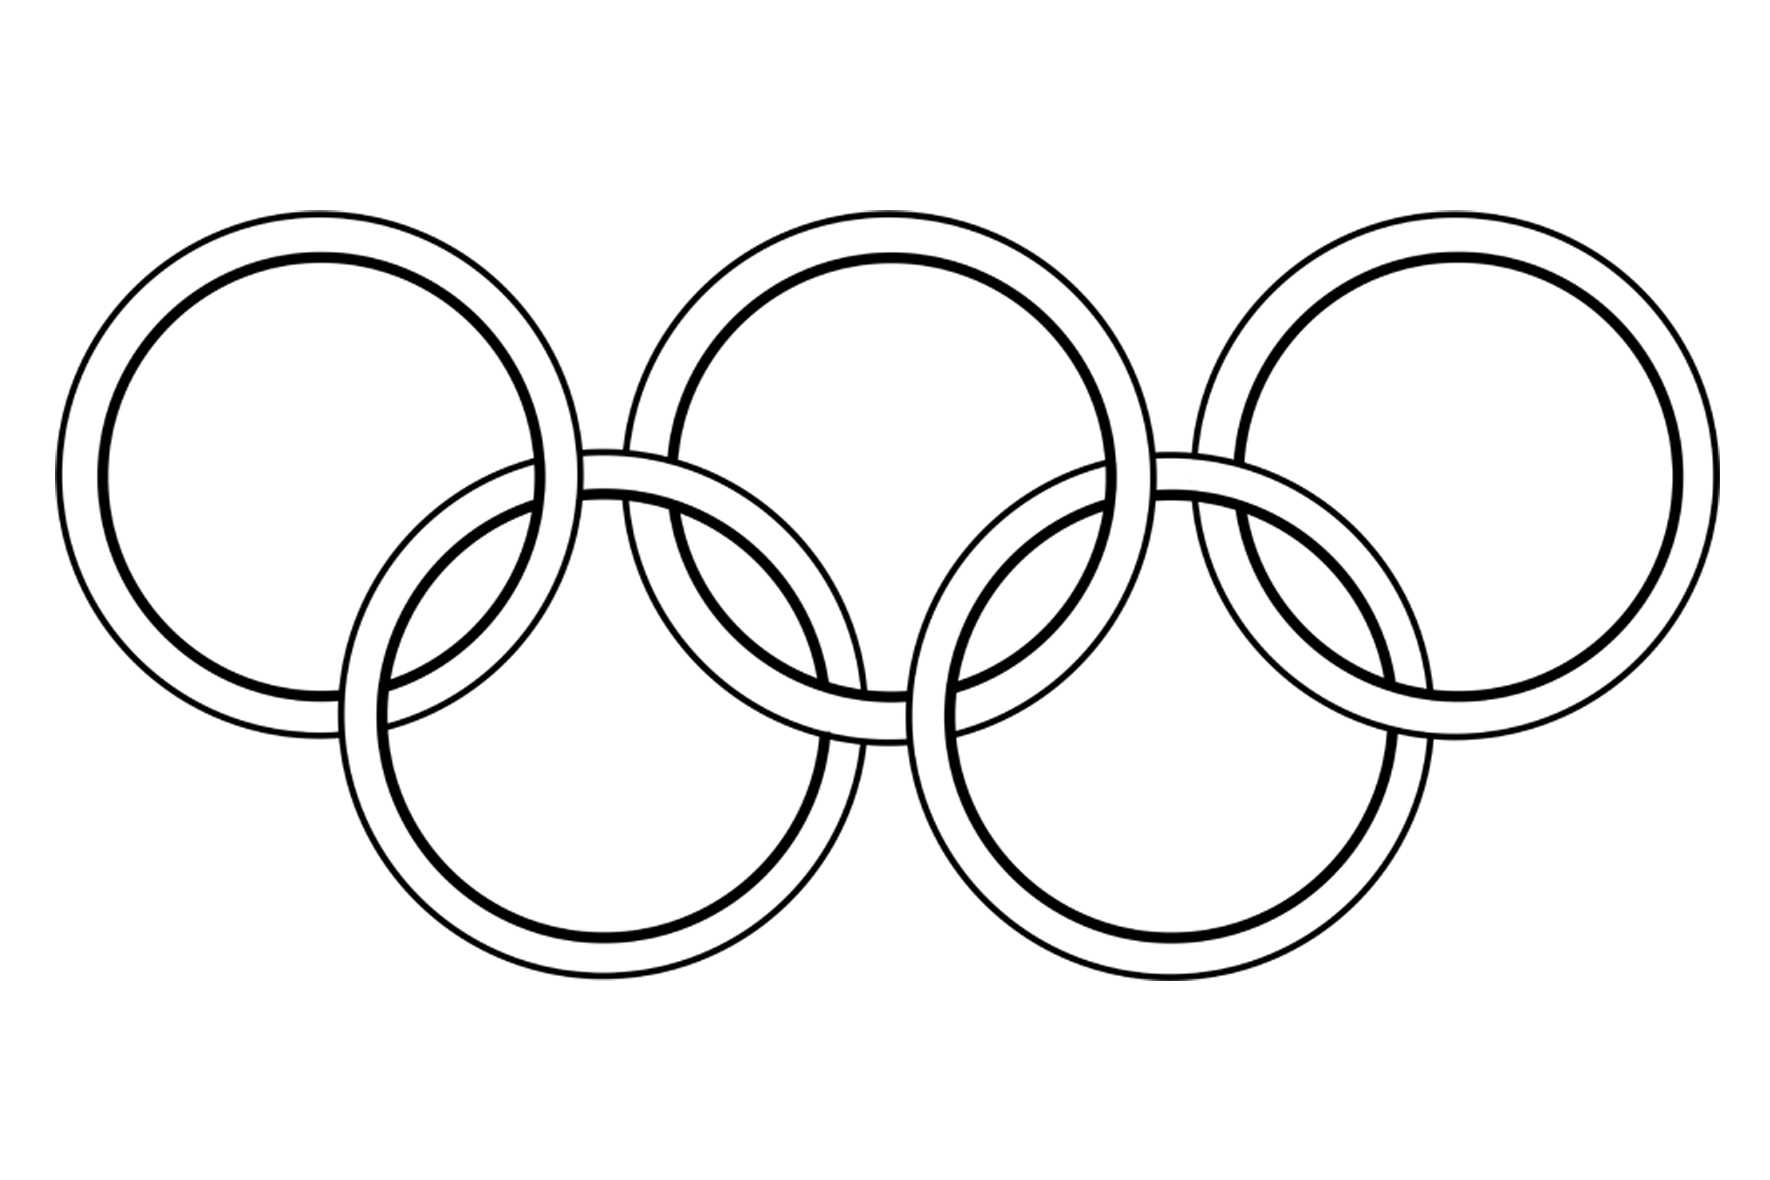 Стоковые фотографии по запросу Олимпийские кольца